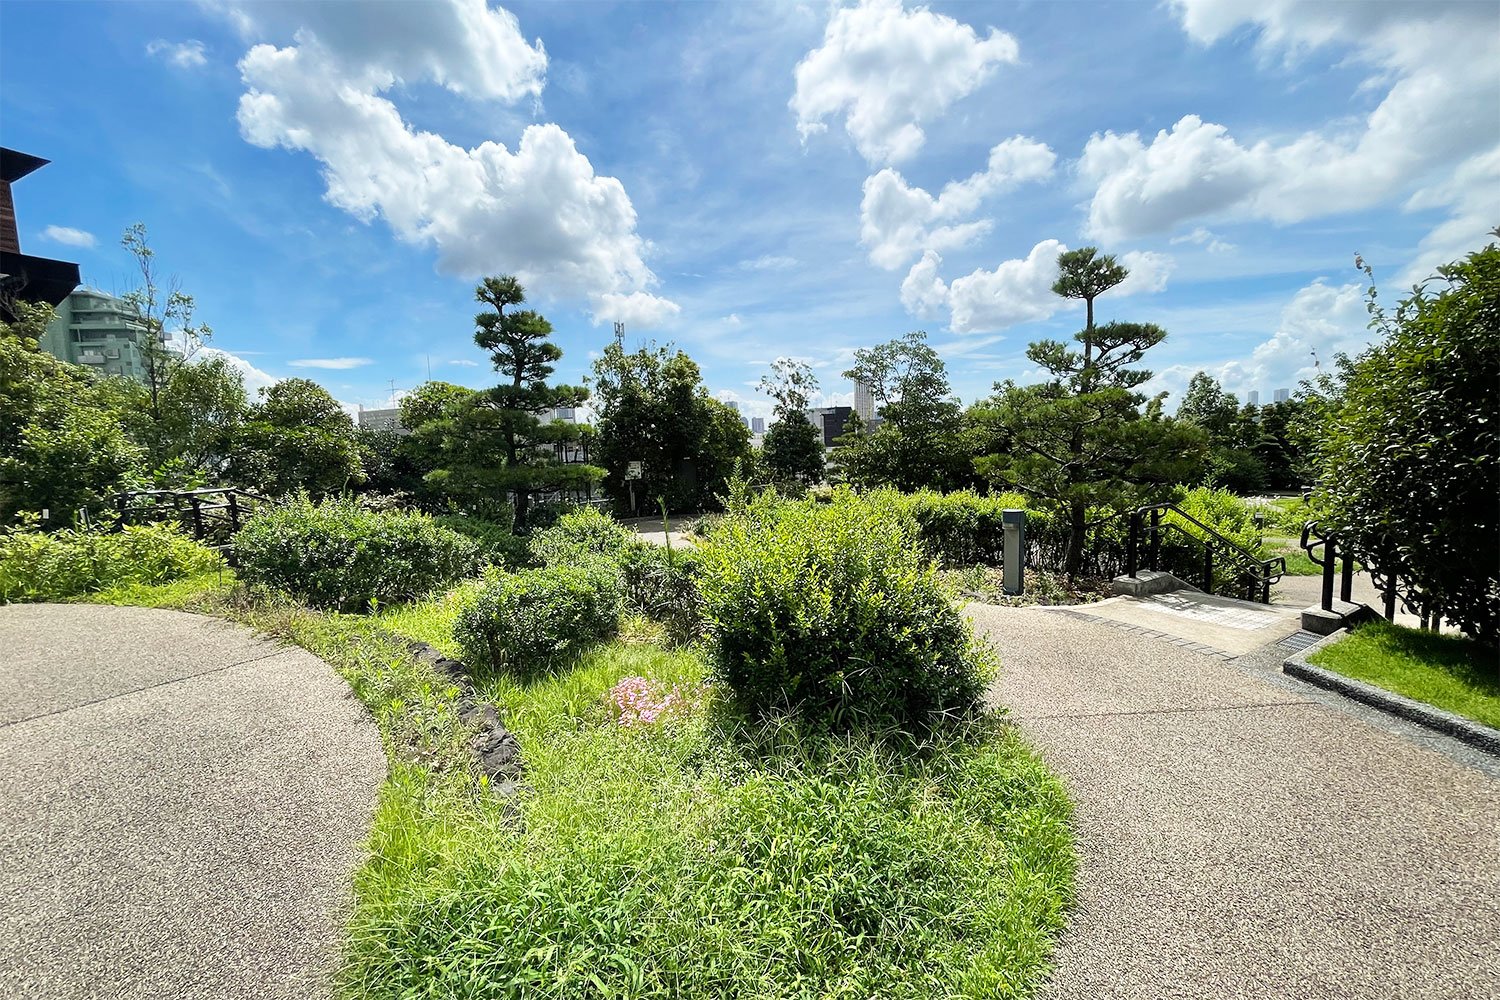 総面積約7000㎡の敷地に高木、中木およそ1000本、低木、地被類およそ3万株を植栽する「目黒天空庭園」。